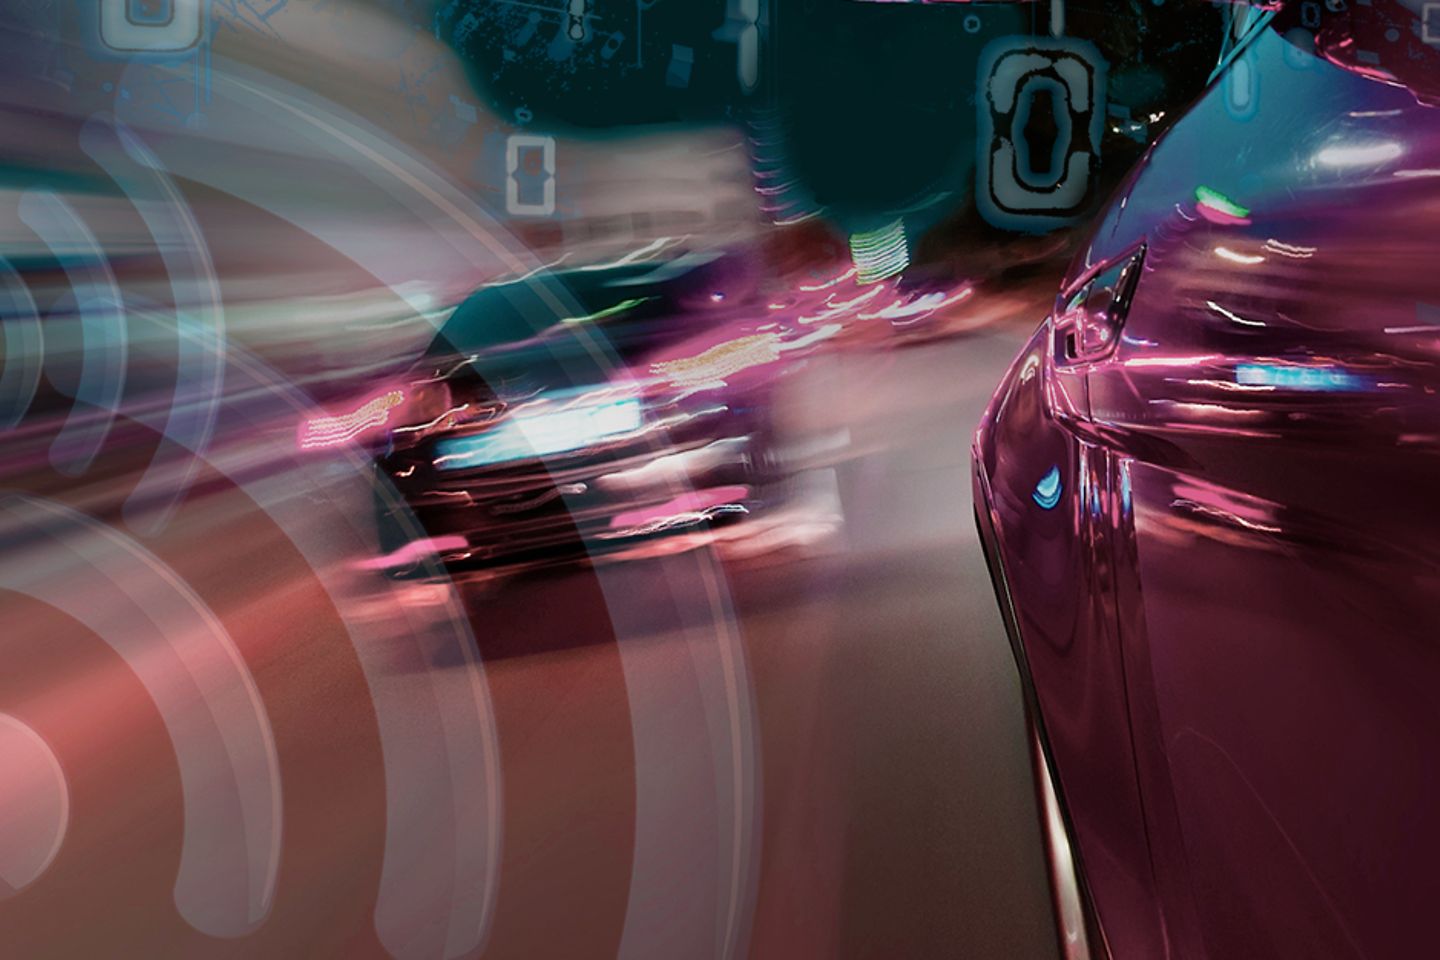 Rotes fahrendes Auto rechts im Bild, links vorbeifahrende Autos und ein Wifi-Symbol